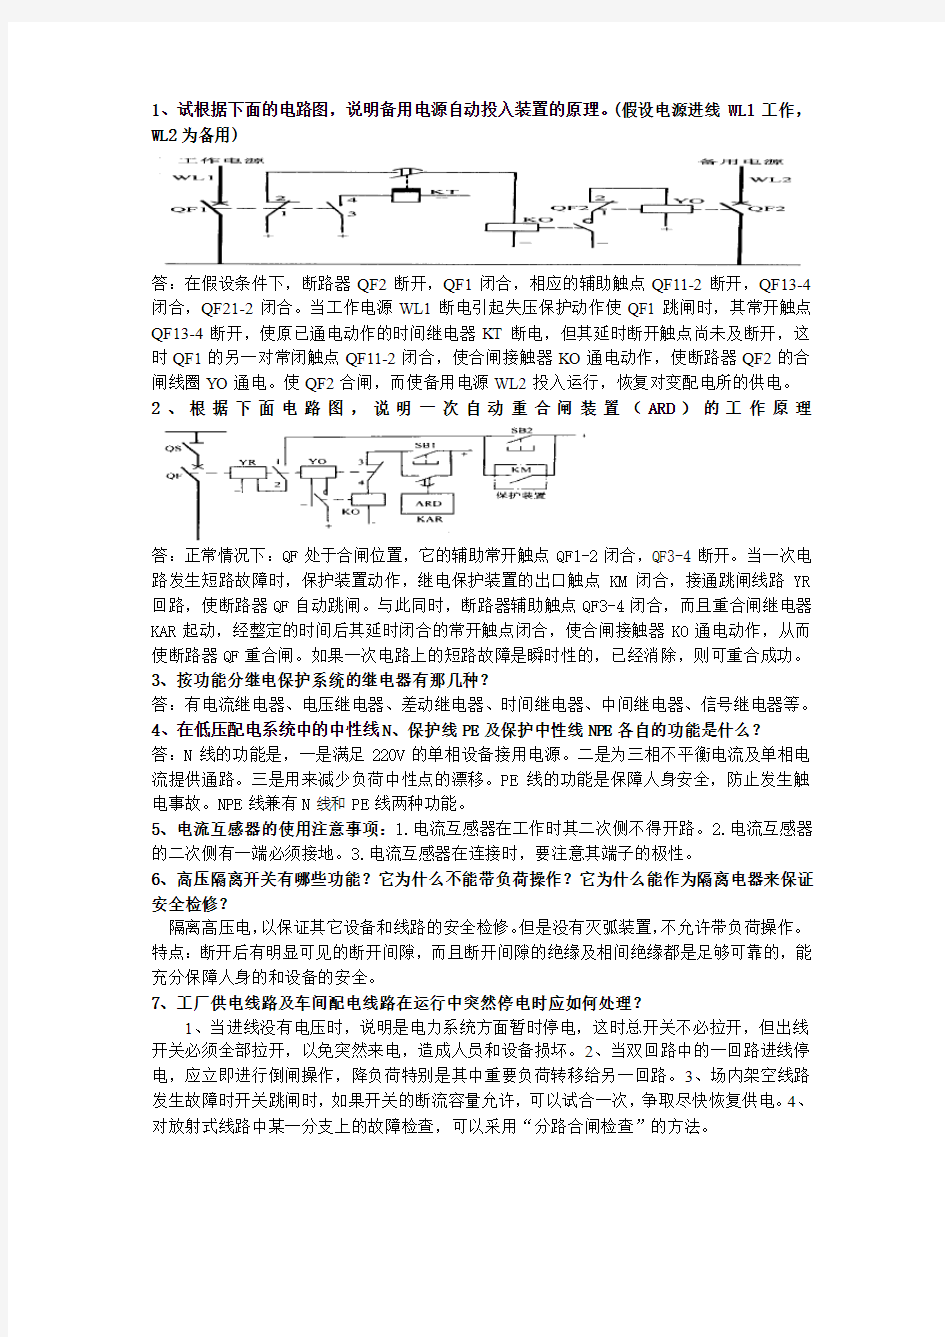 工厂供电(刘介才第五版)期末考试问答题